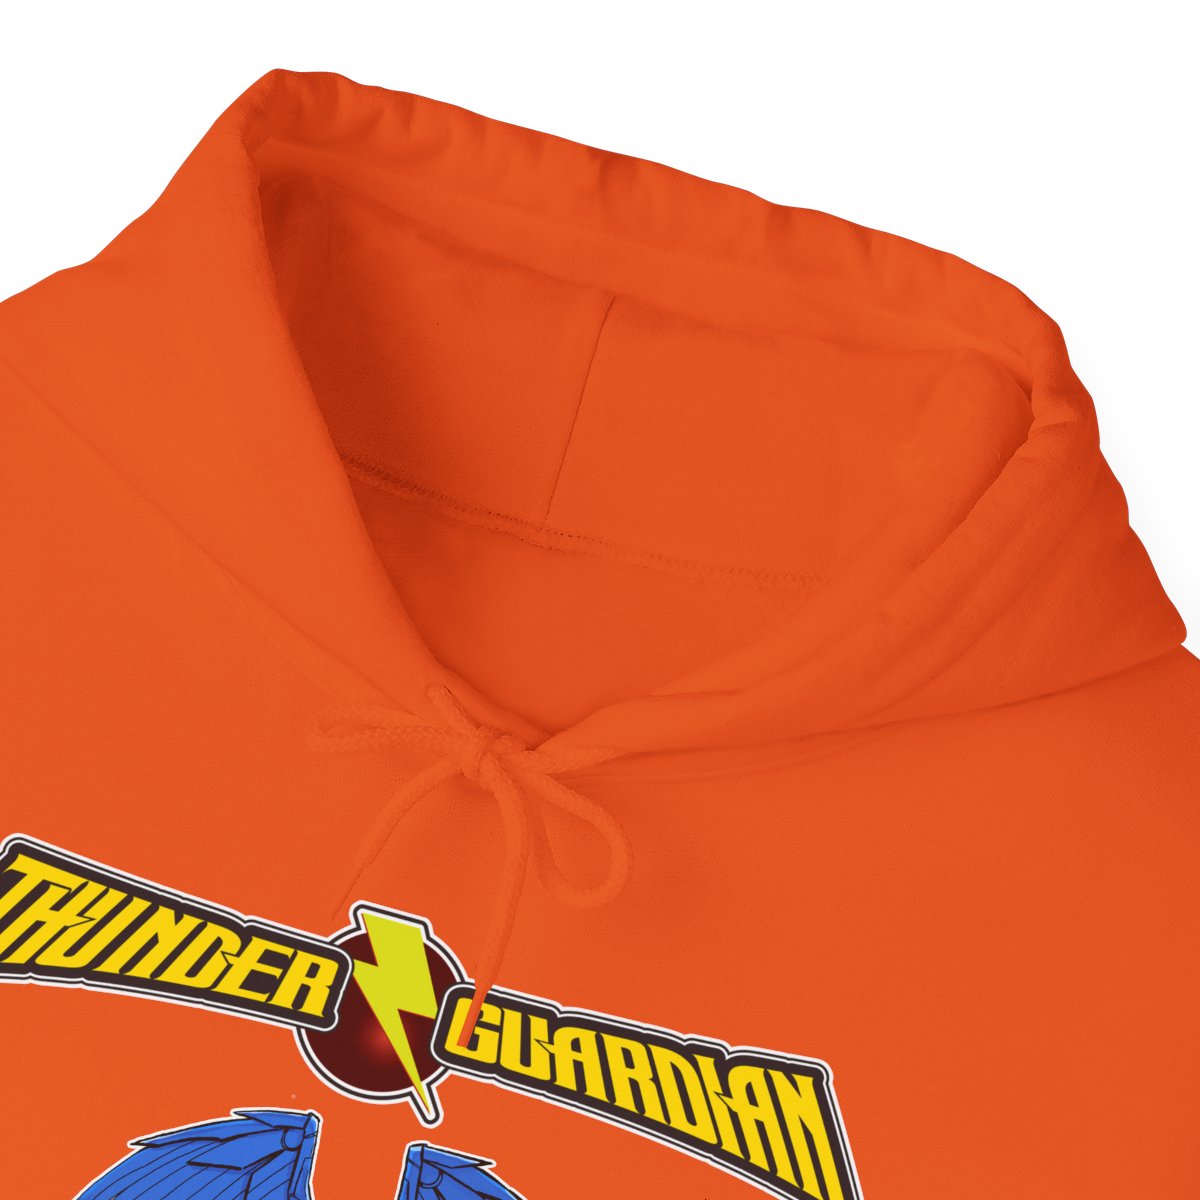 Unisex Thunder Guardian Hooded Sweatshirt product thumbnail image